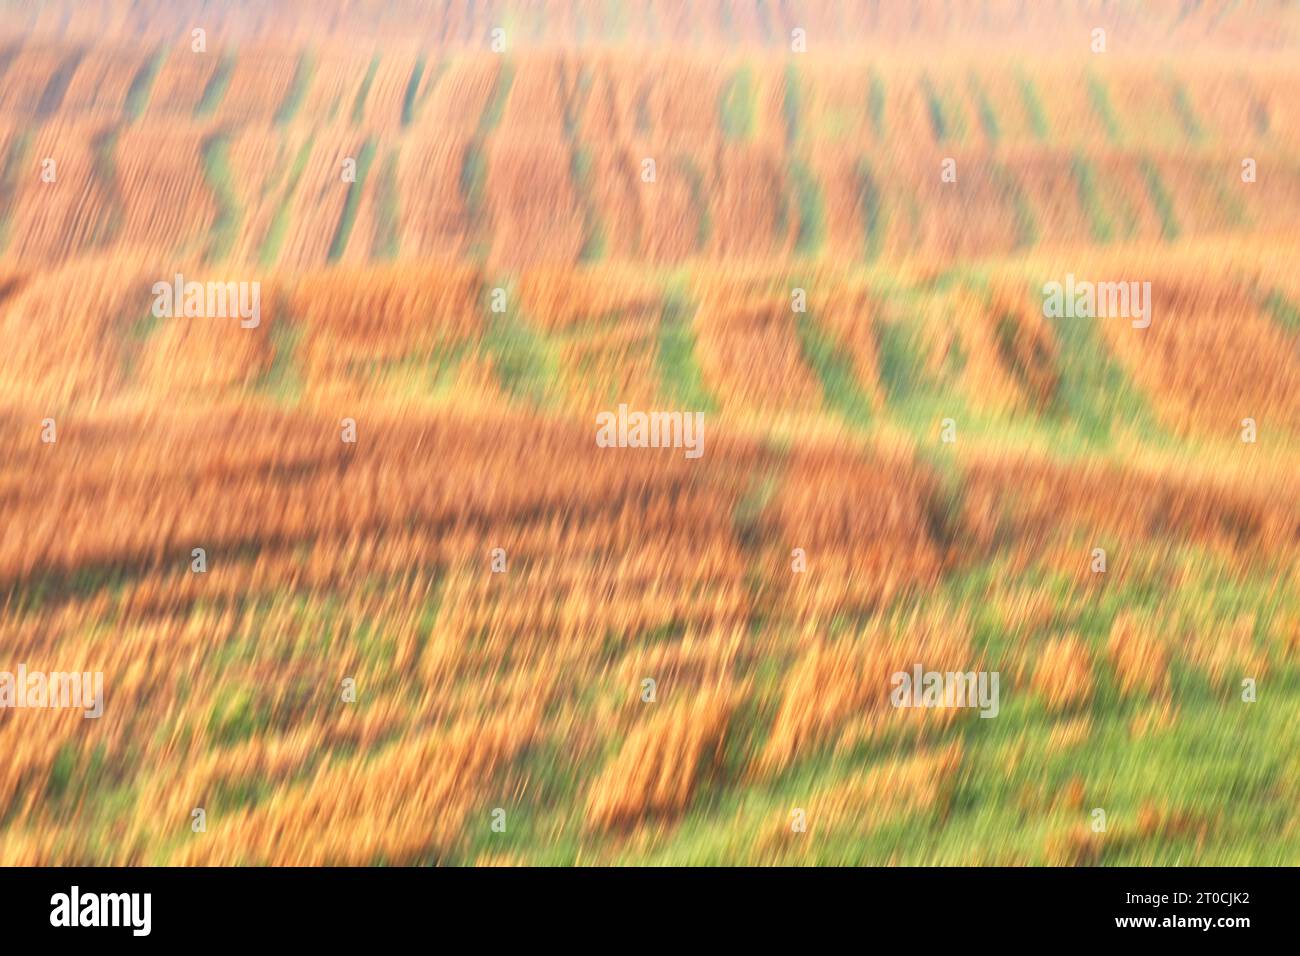 Bewegungsunscharfes Foto eines landwirtschaftlichen Feldes. Stockfoto